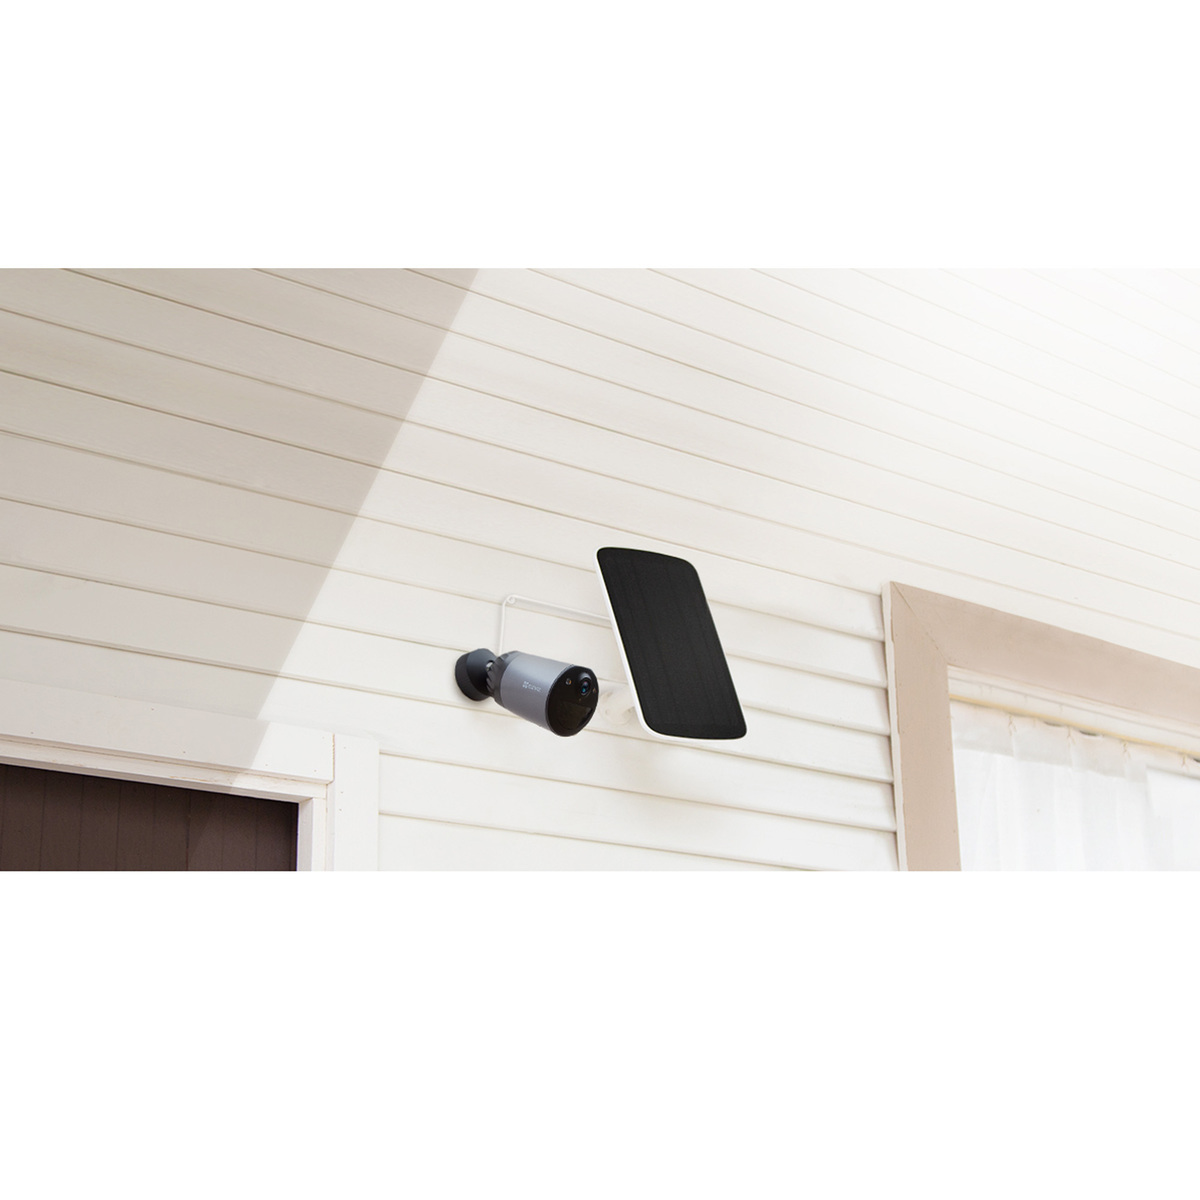 إيزفيز كاميرا مراقبة منزلية ذكية + لوحة شمسية، CS-BCIC